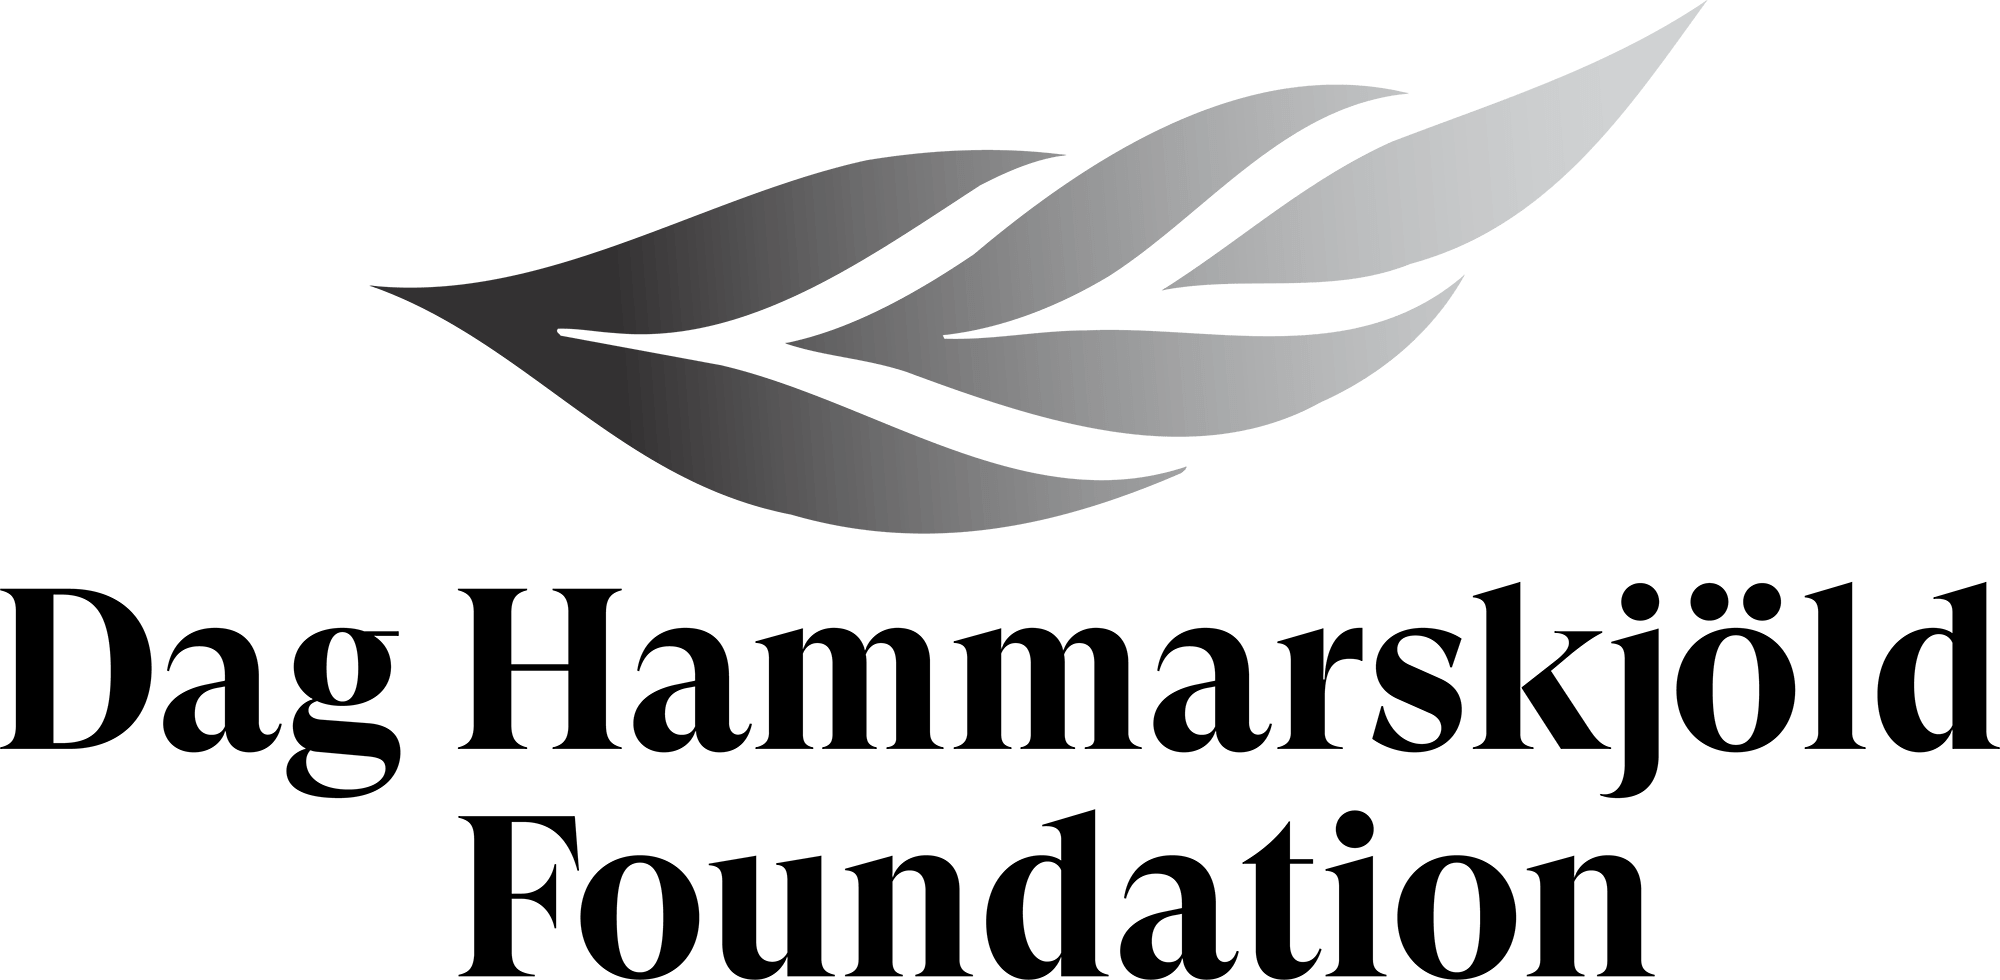 logo-fundation